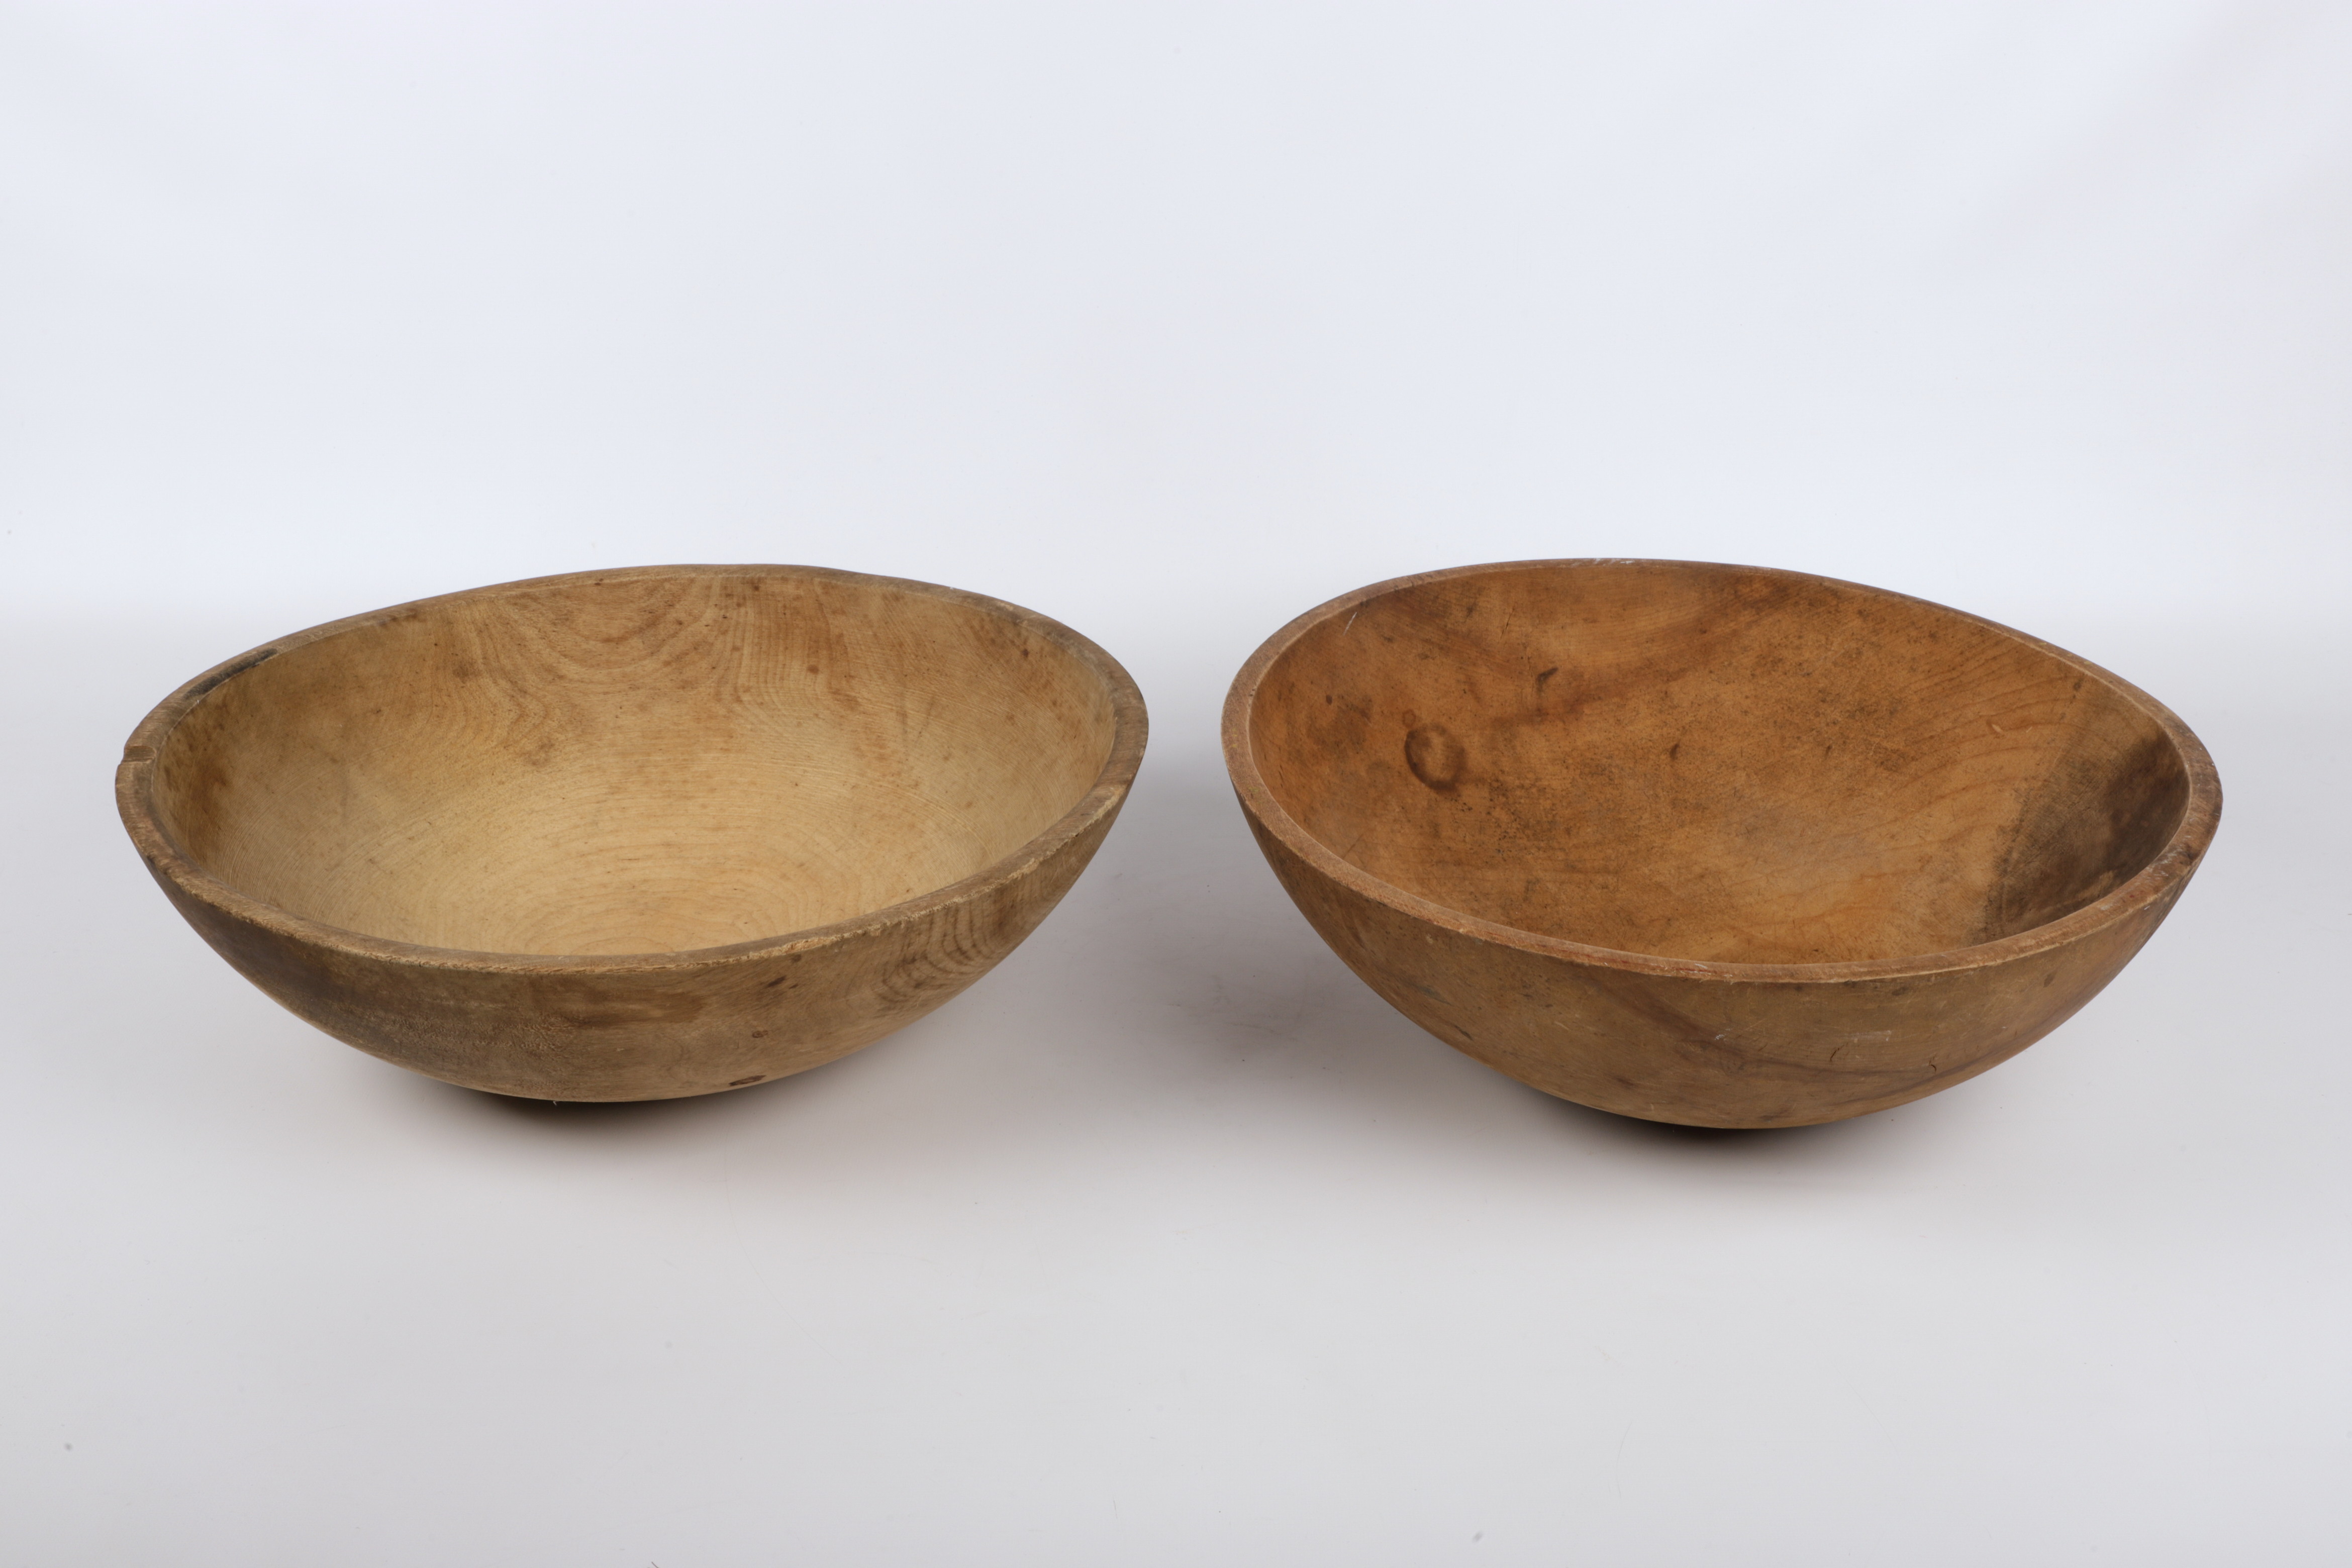  2 Large turned wood dough bowls  3ca8da